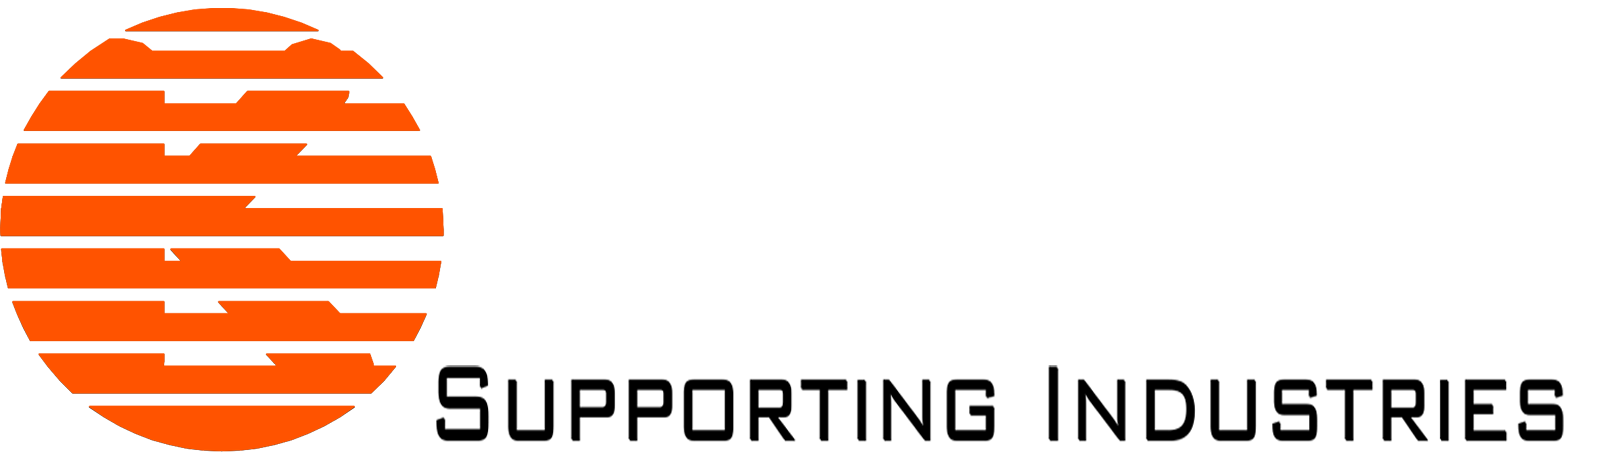 Kaitech - Nhà sản xuất sản phẩm nhựa tùy chỉnh kỹ thuật